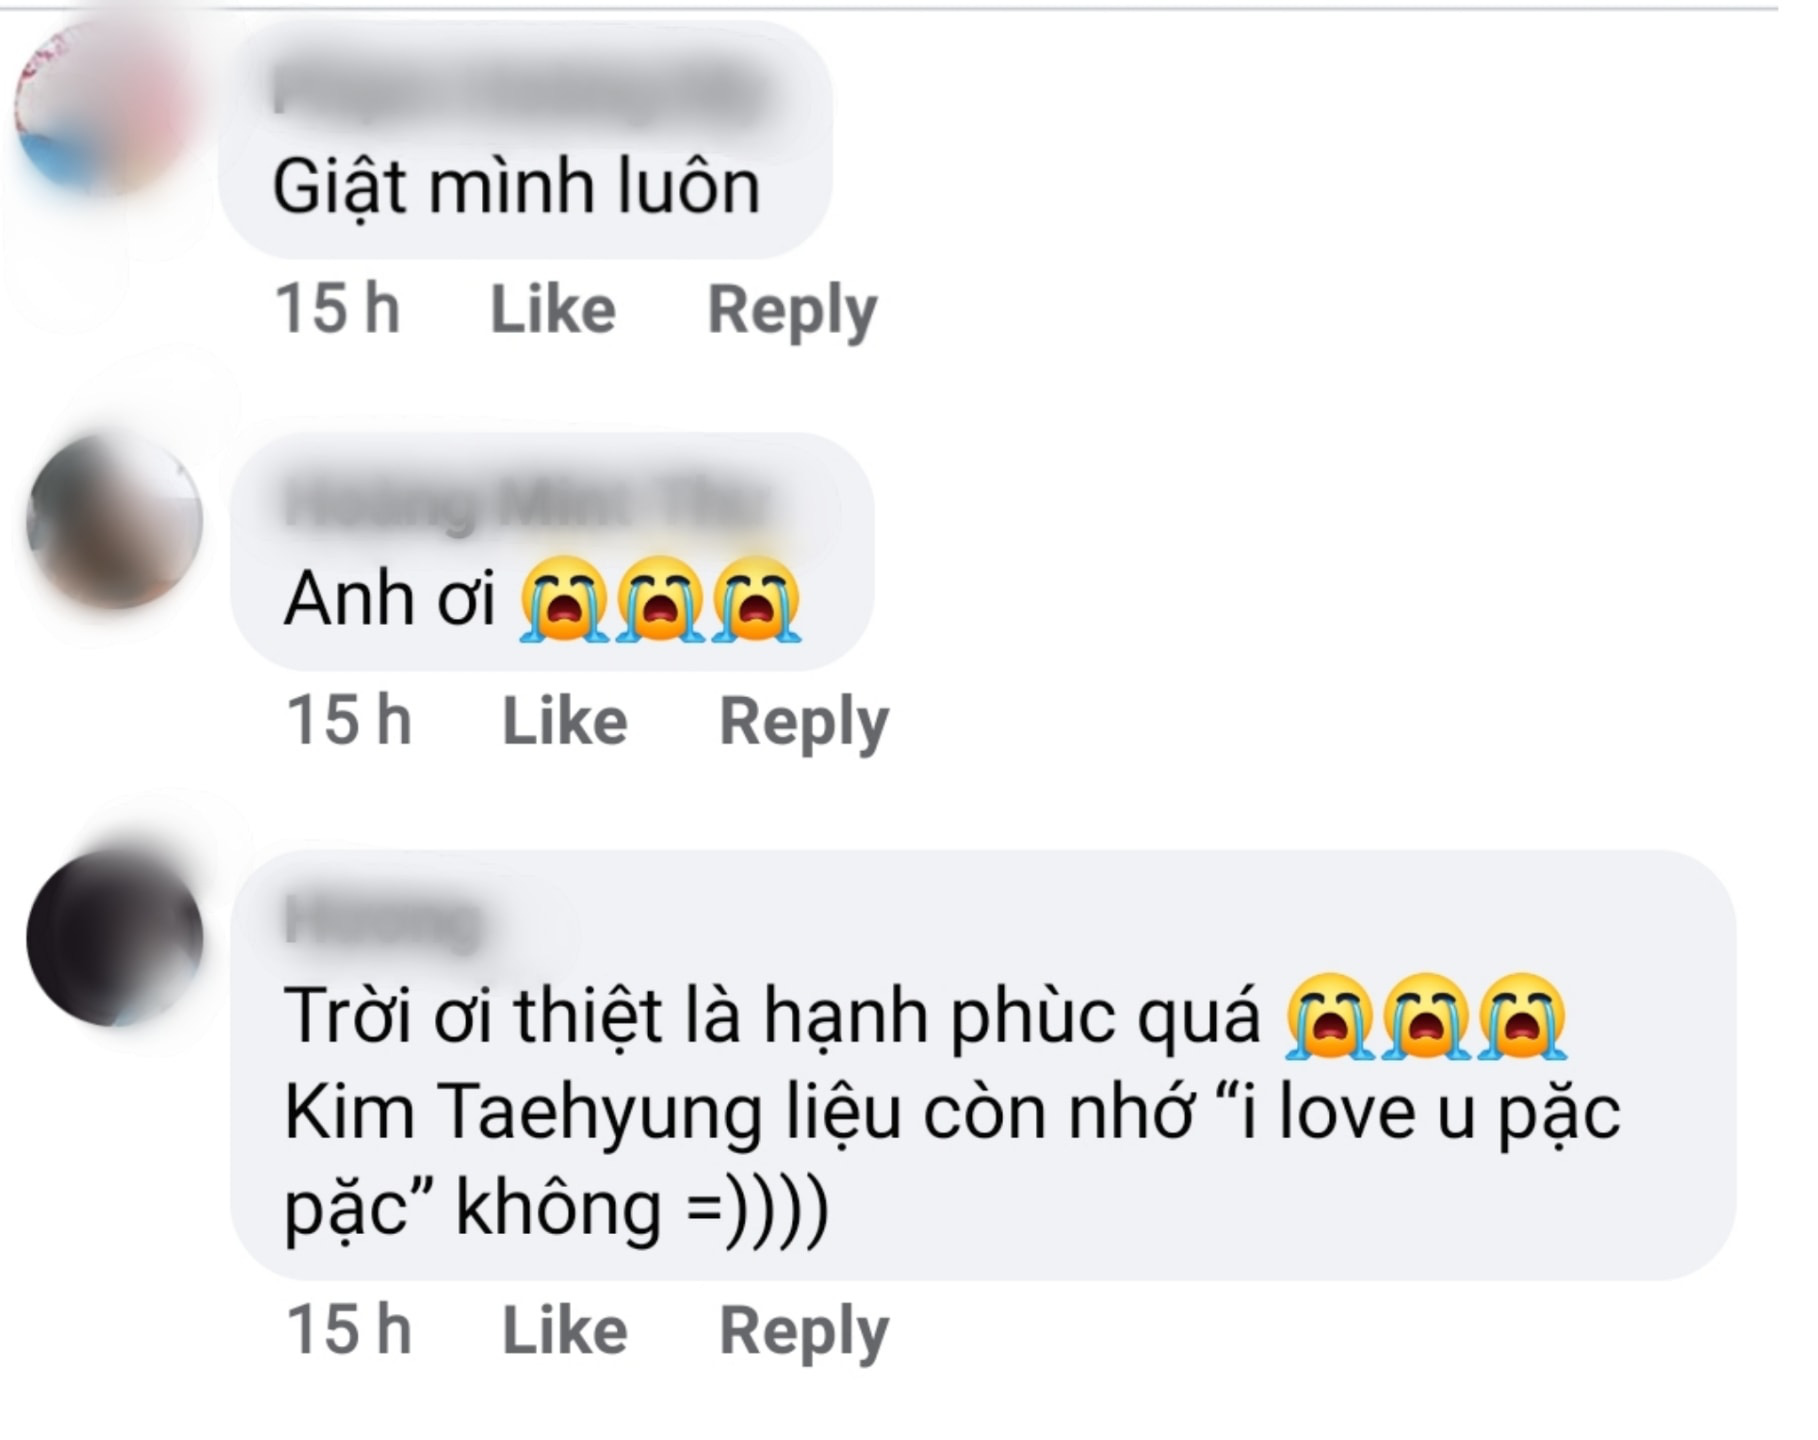 Nam thần đẹp trai nhất thế giới bất ngờ thả thính siêu ngọt bằng tiếng Việt, fan rần rần đoán BTS sắp có gì đó ở Việt Nam - Ảnh 6.